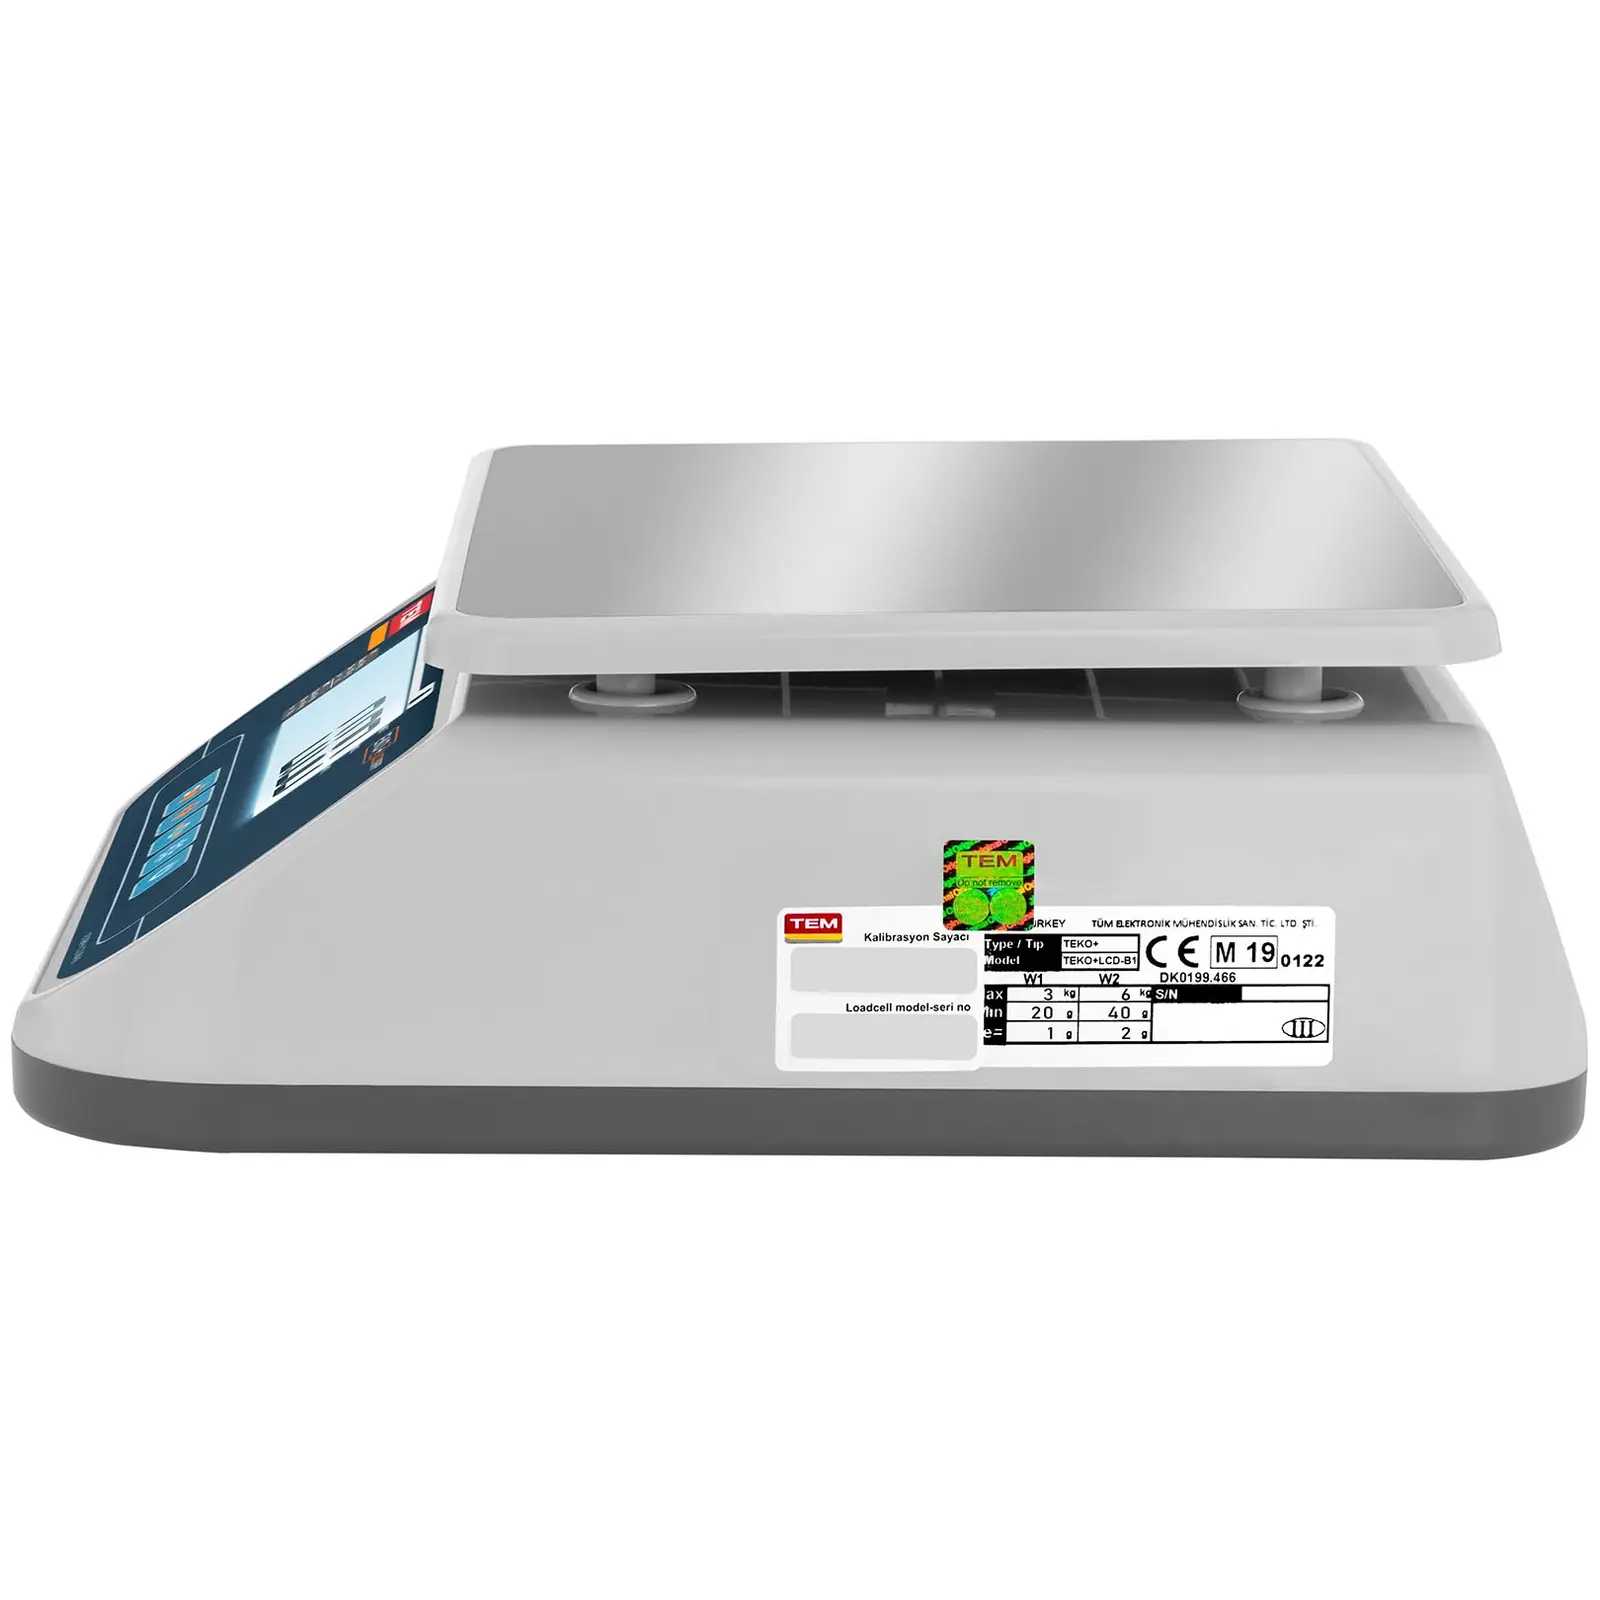 Asztali mérleg - hitelesített - 6 kg/2 g - Dual LCD